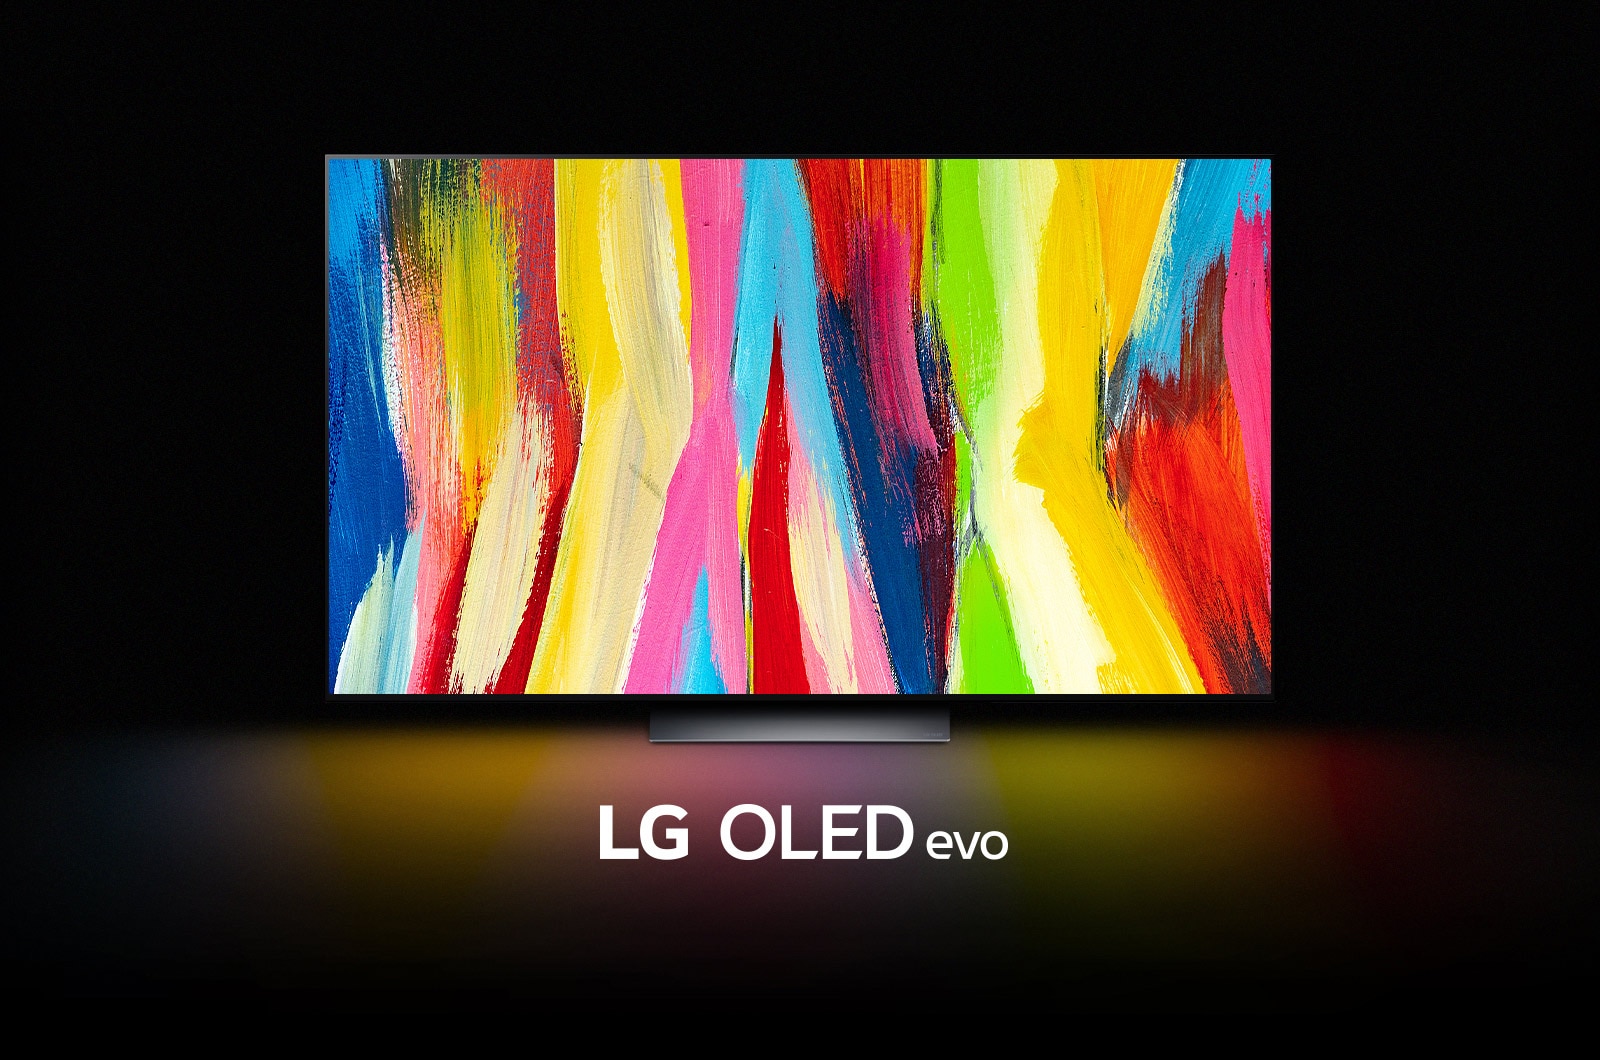 Renomowany telewizor LG OLED C2 w znakomitej ofercie! 65 cali z dużym rabatem i gratis w pakiecie – gdzie?